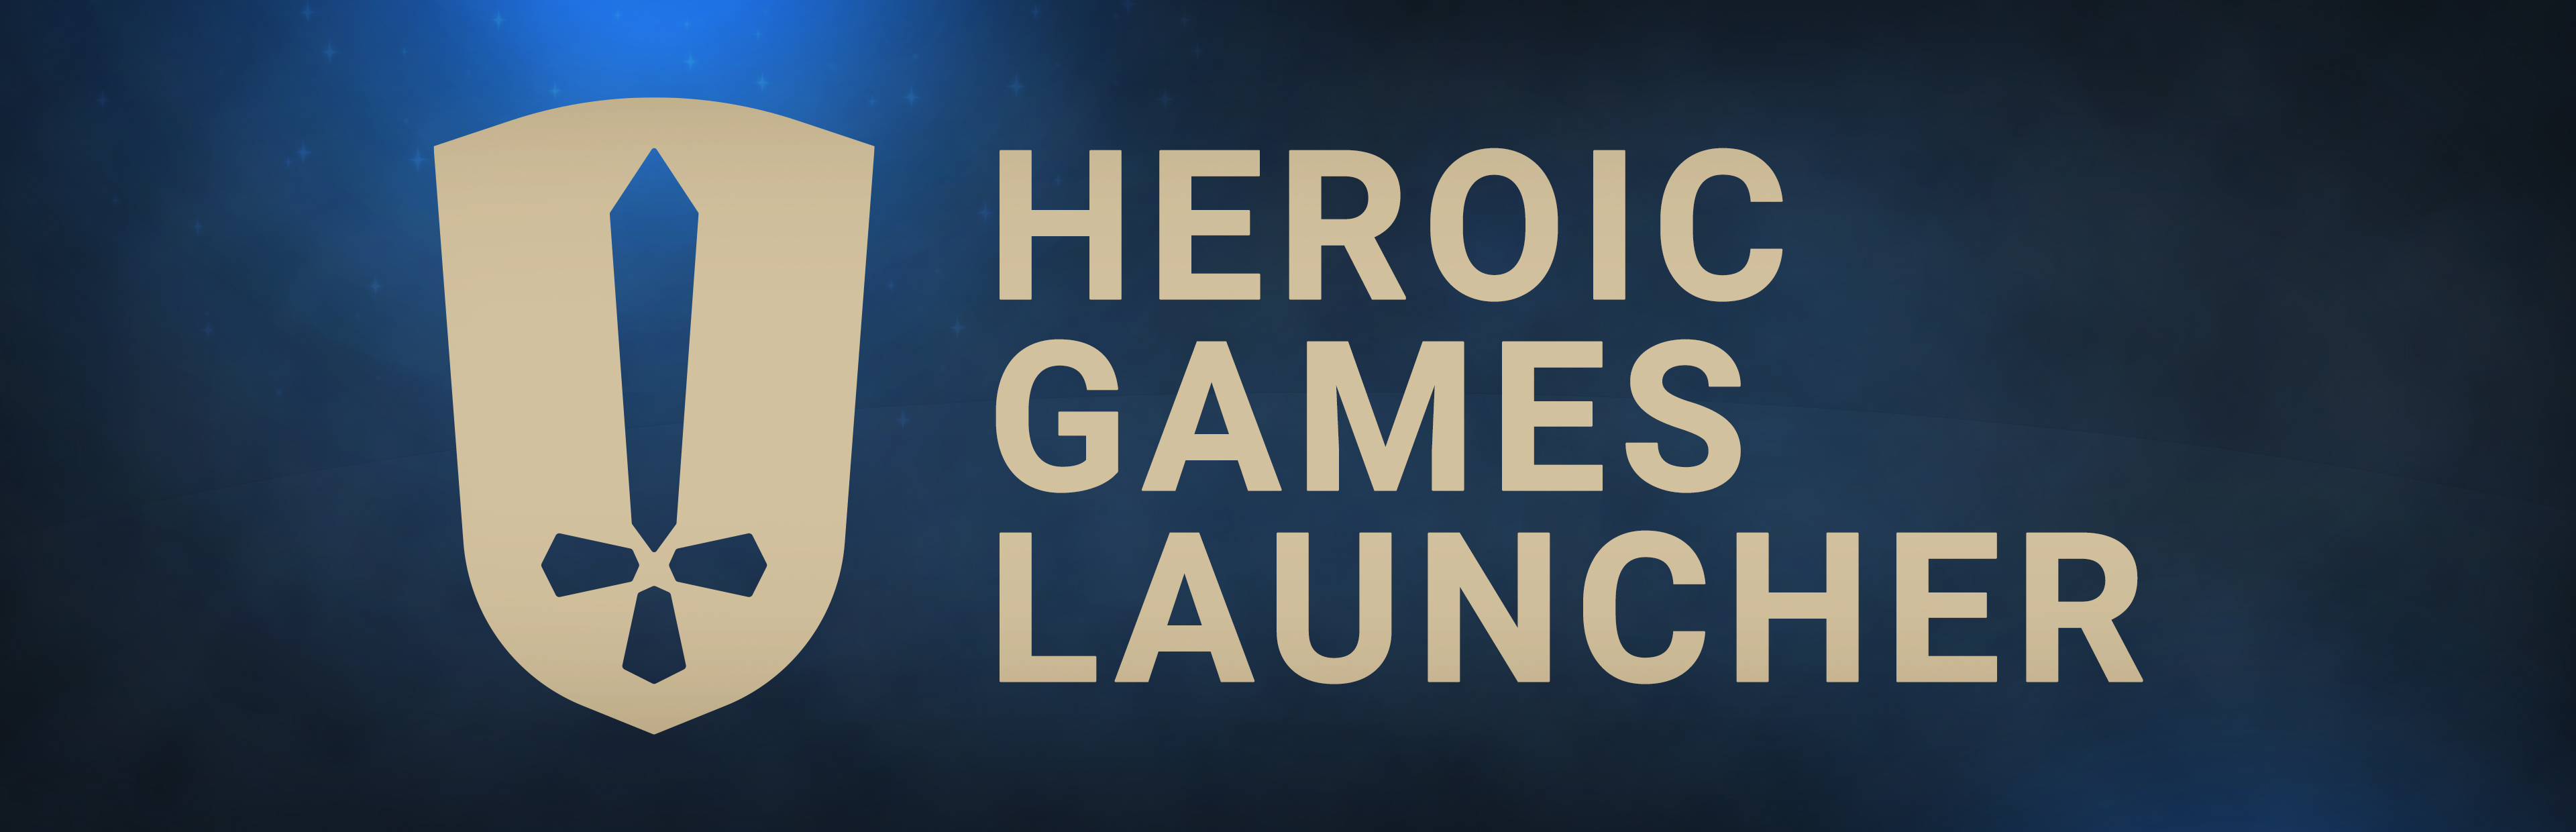 Heroic Games Launcher